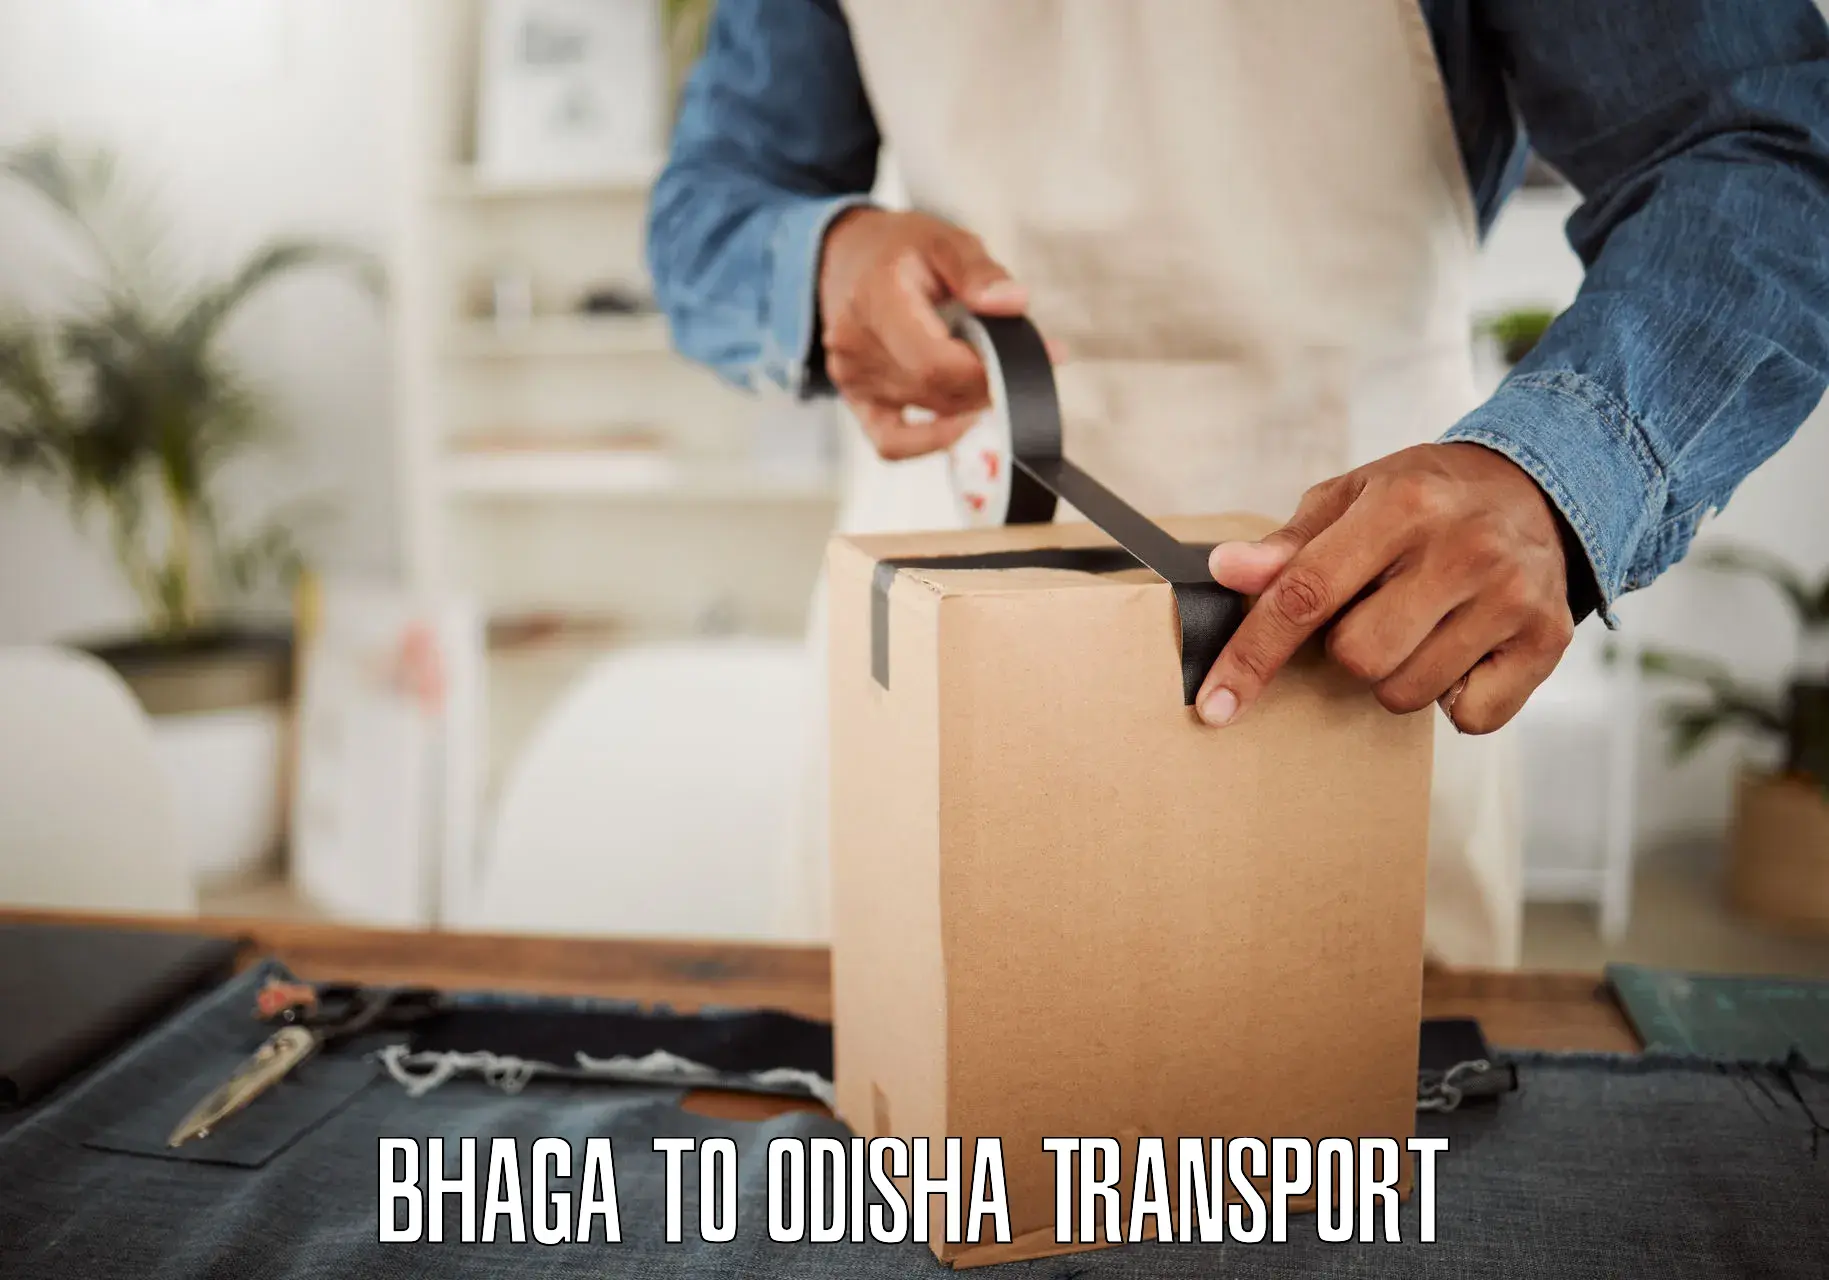 Transport shared services Bhaga to Kupari